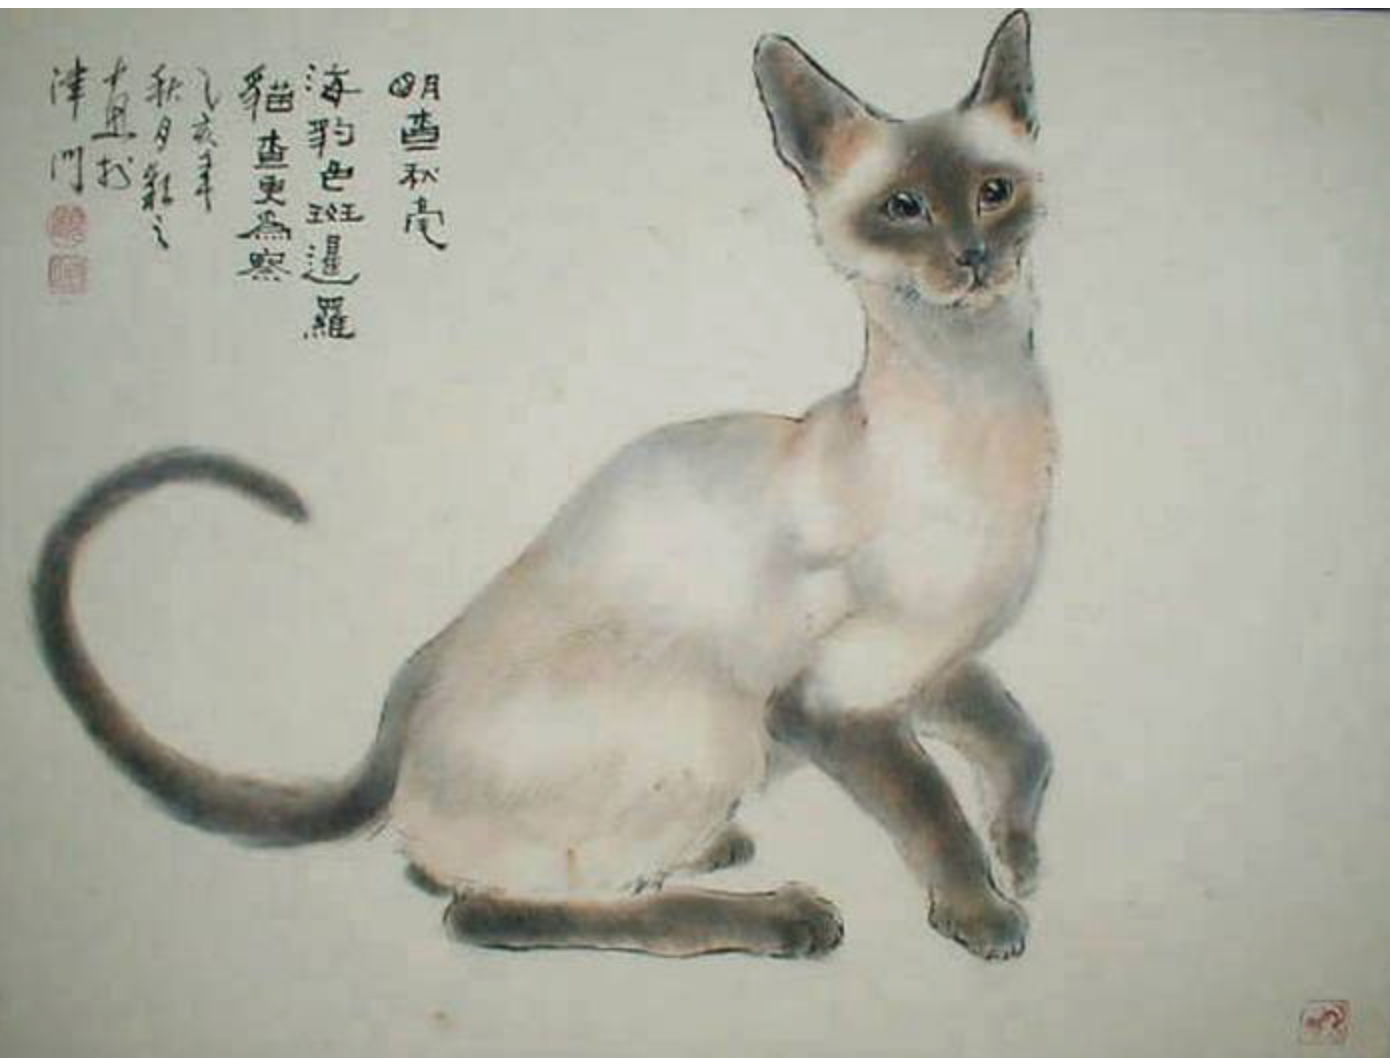 Котики в китае видео. Китайские коты ГУ Йинчжи. ГУ Йингжи художница Китай кошки. Котики в китайской живописи. Японская живопись коты.